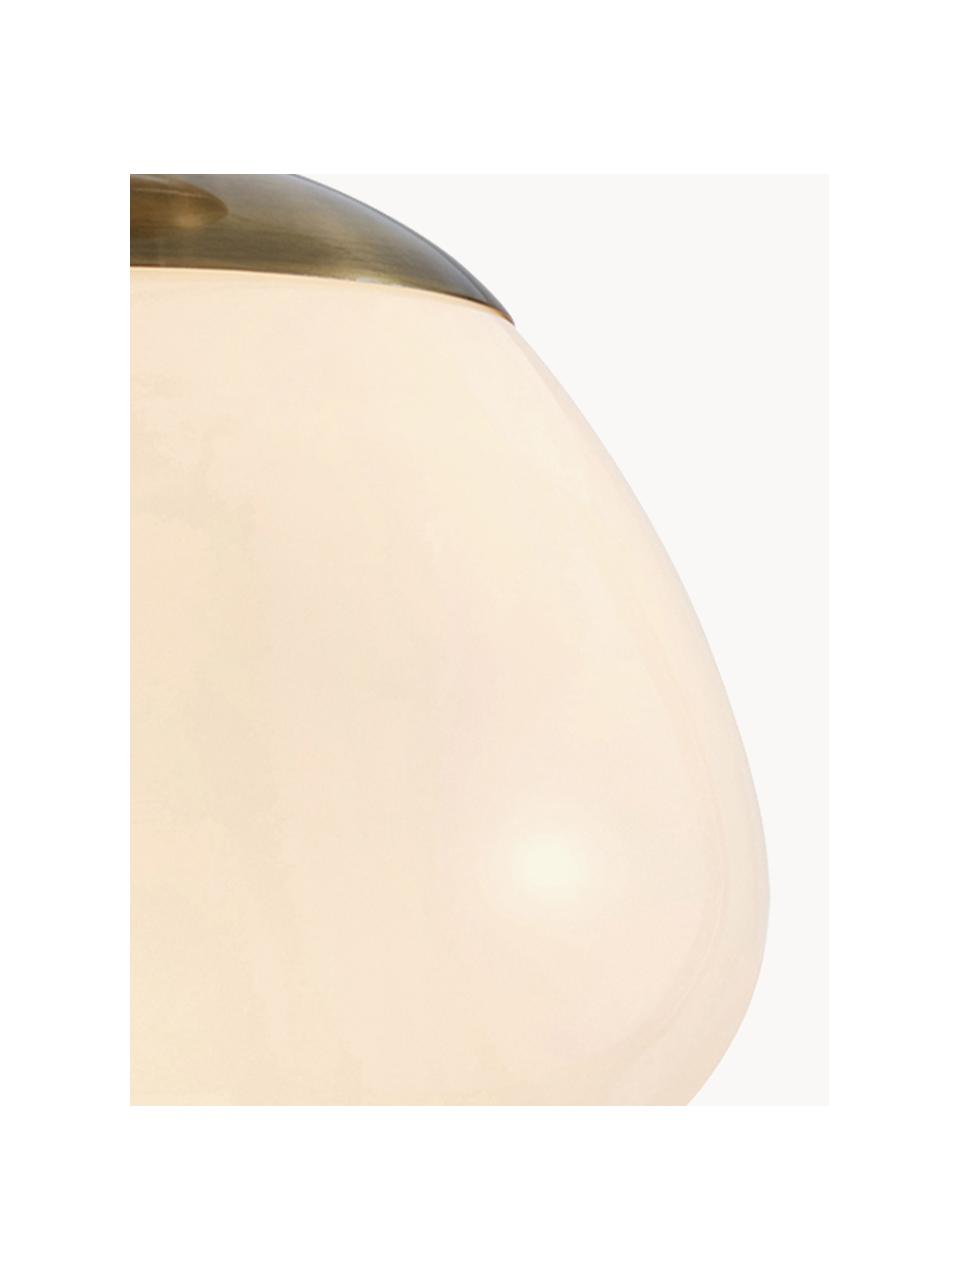 Deckenleuchte Rise, Lampenschirm: Glas, Baldachin: Stahl, gebürstet, Cremeweiß, Goldfarben, Ø 25 x H 35 cm